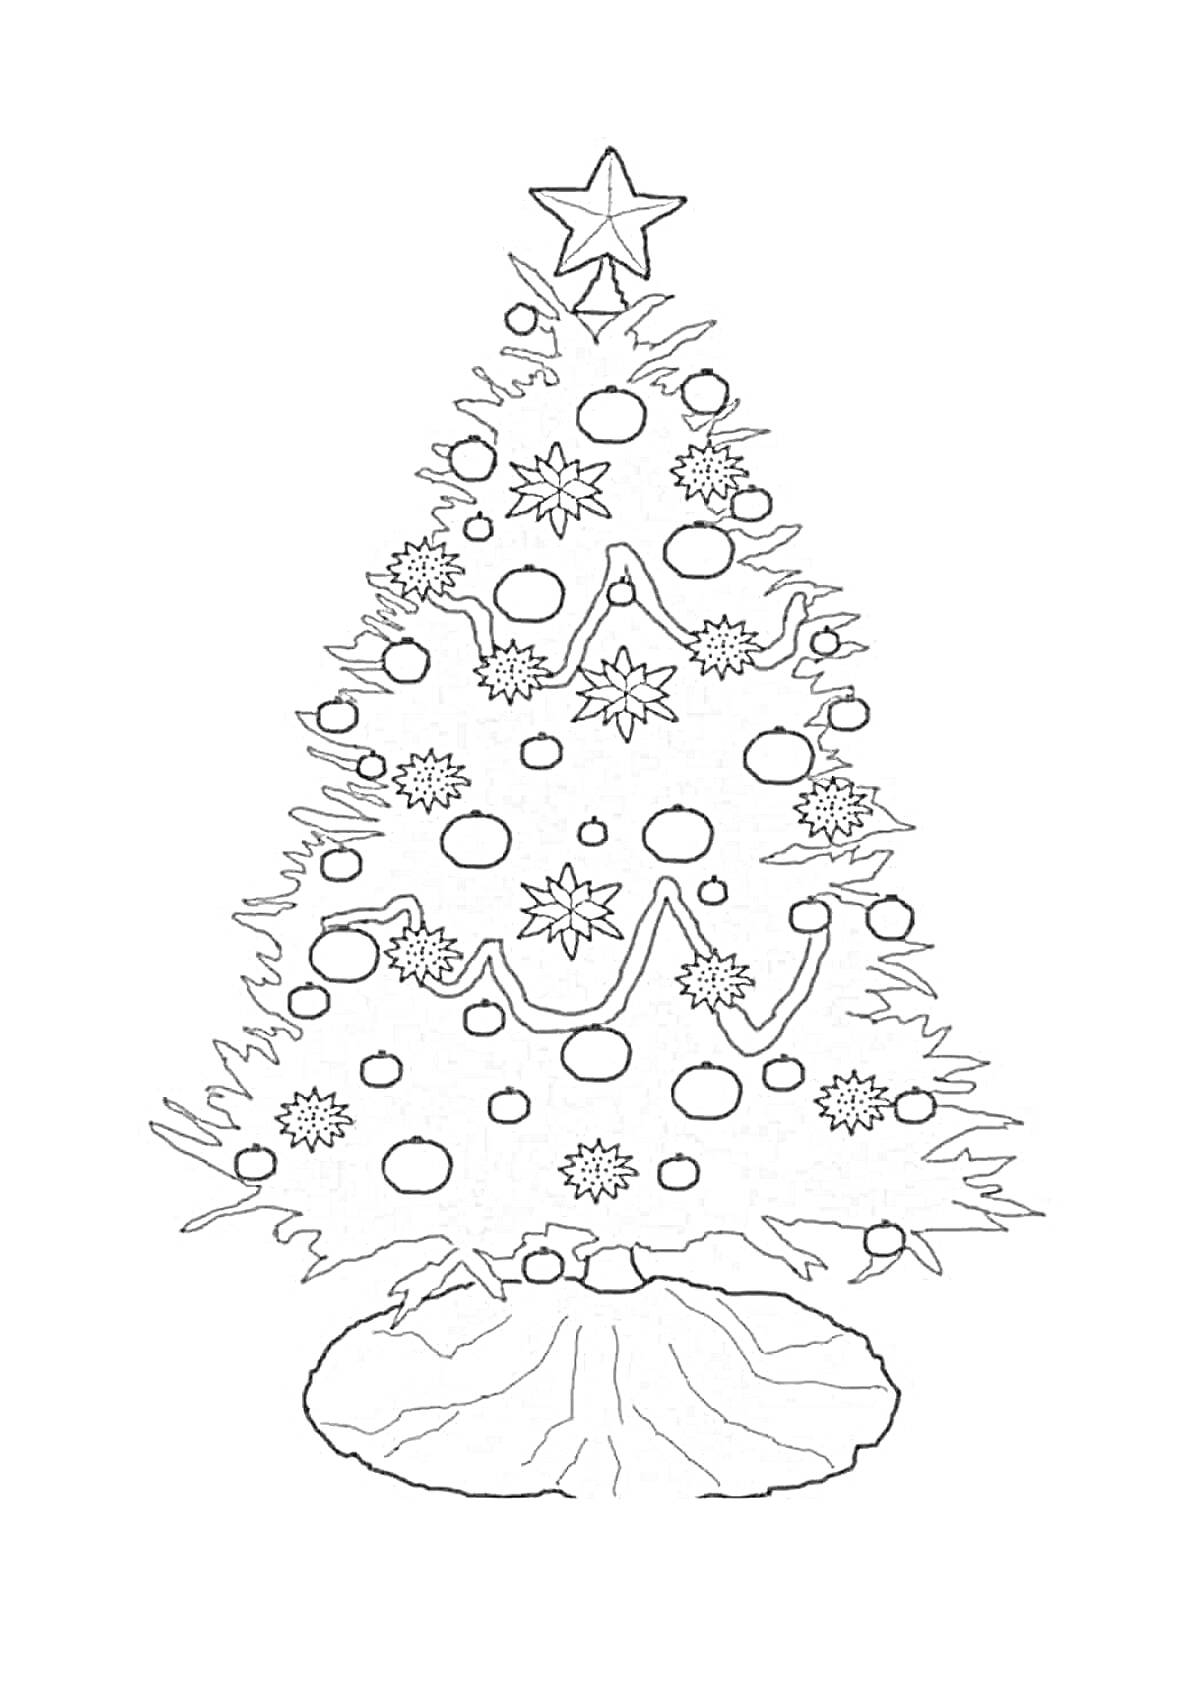 Раскраска новогодняя елка с украшениями и звездой на вершине